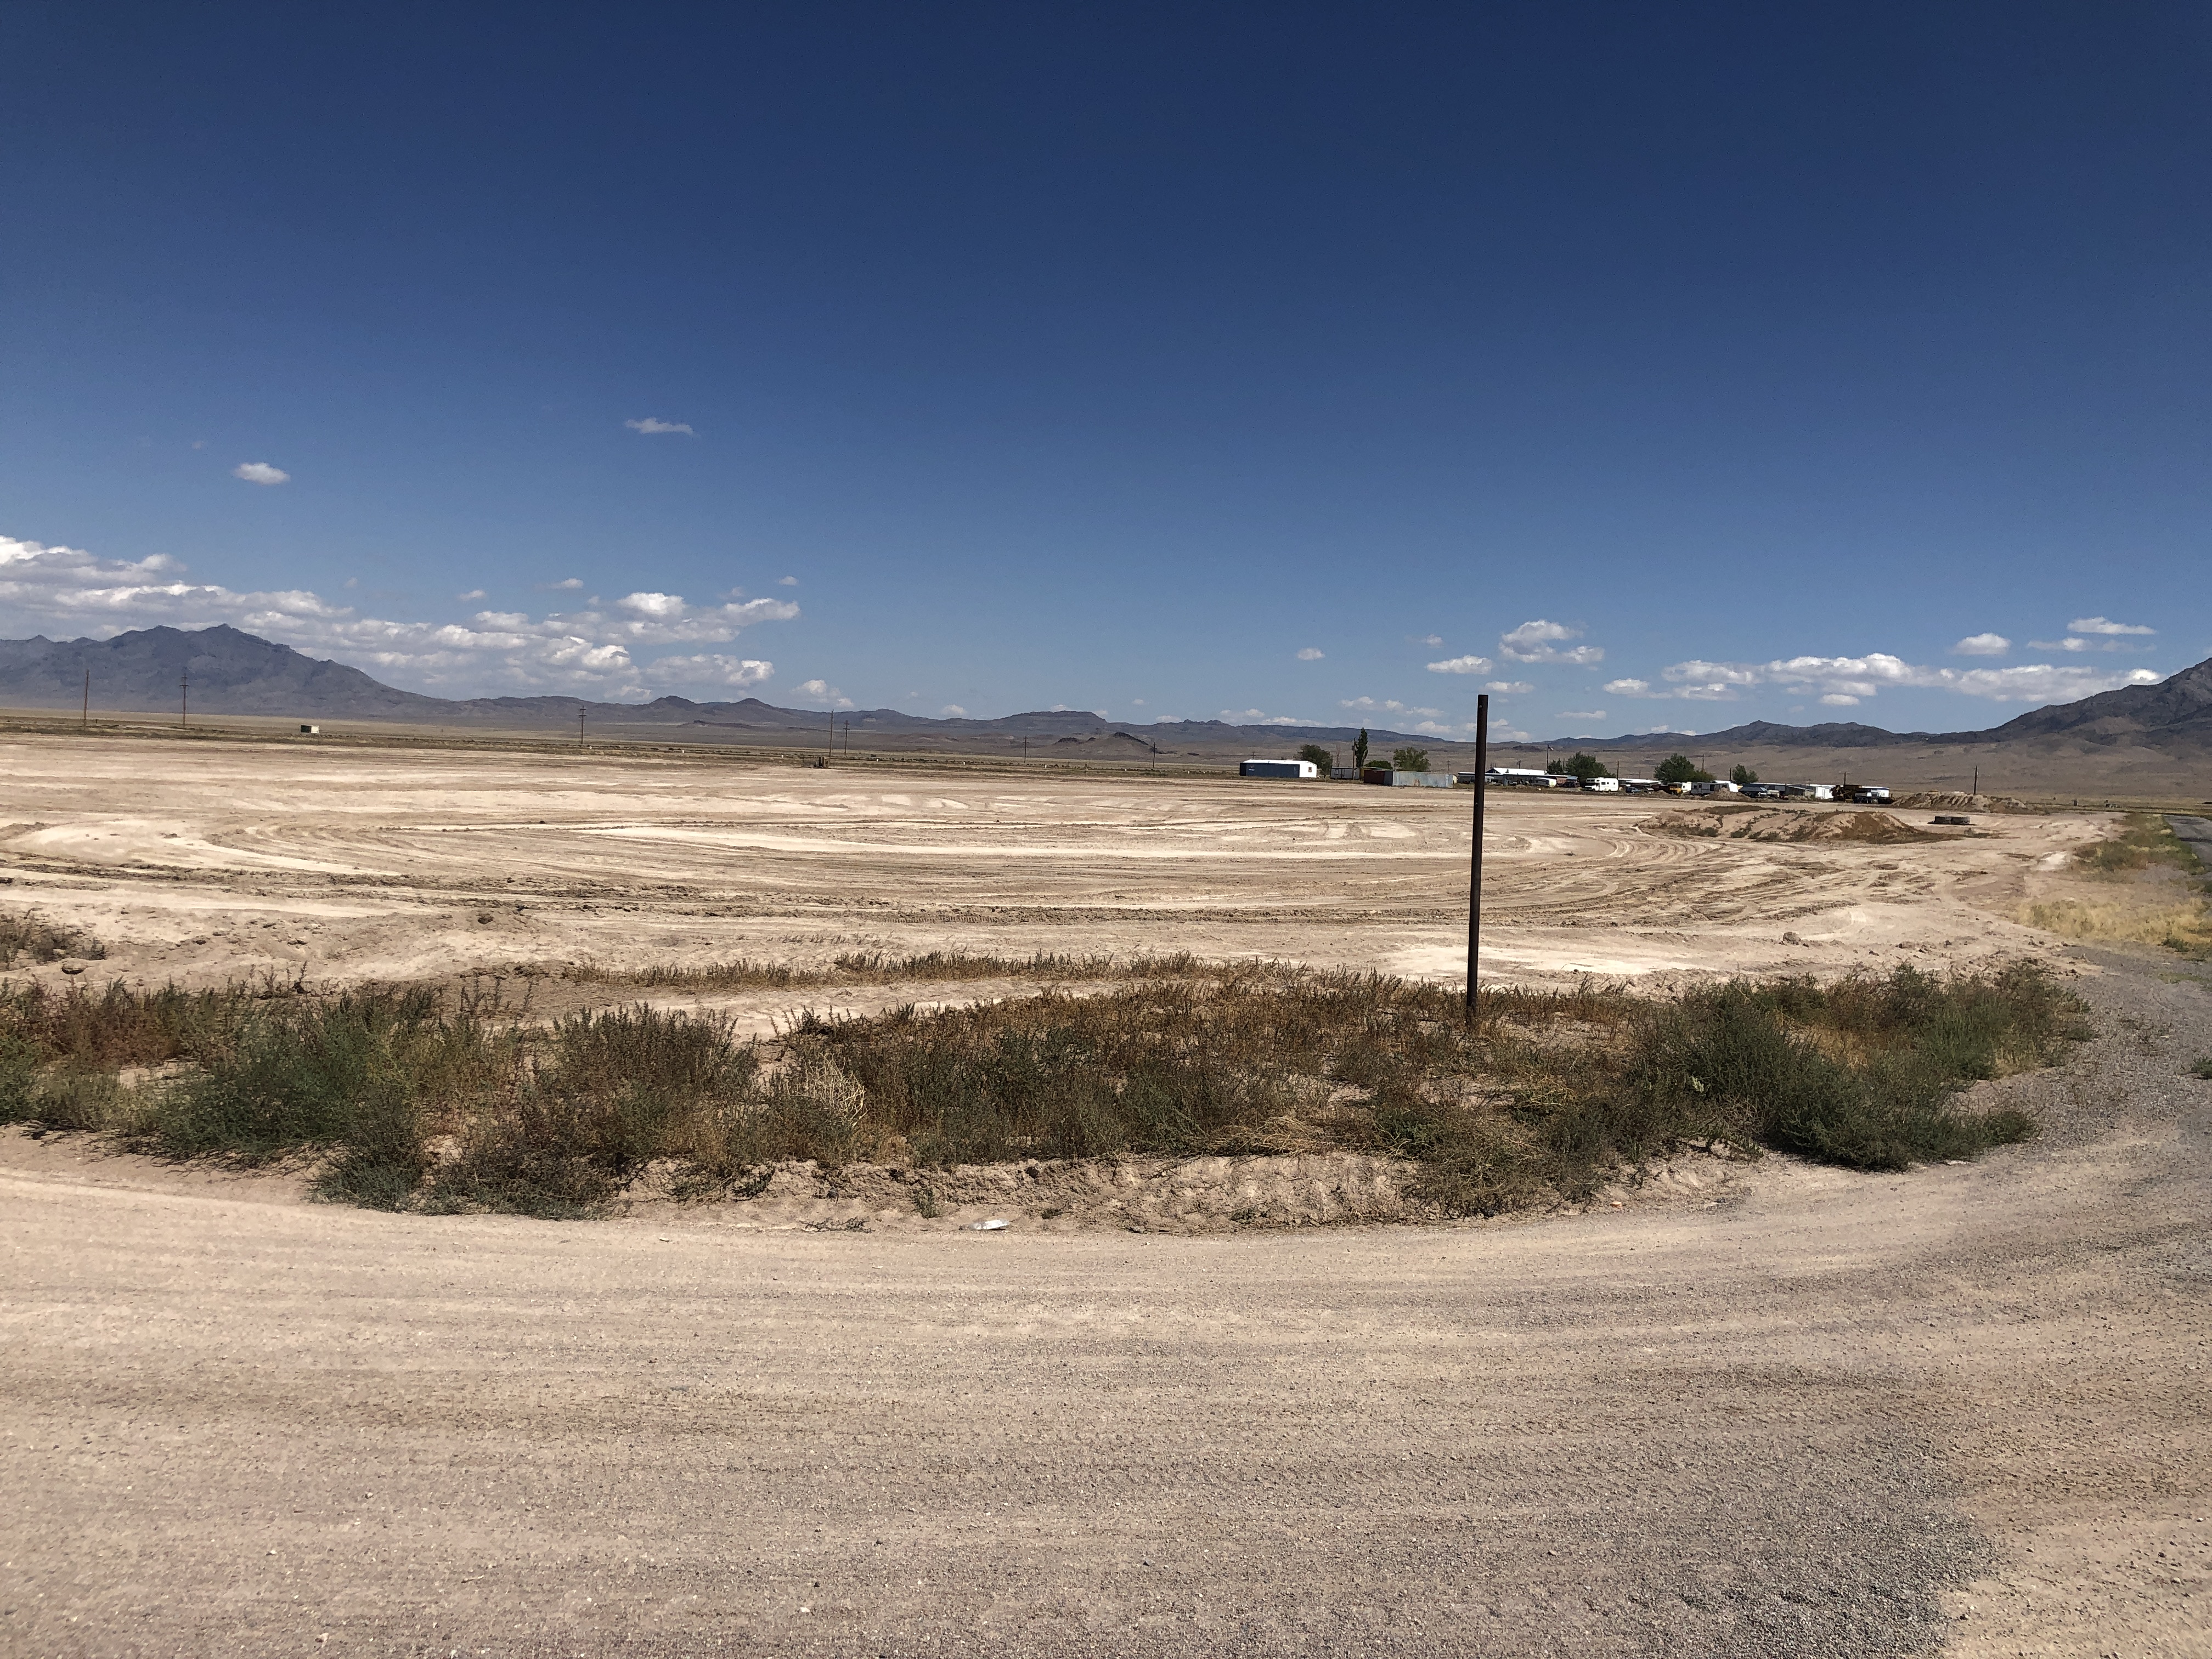 The site of Alienstock in Rachel, Nevada, on Wednesday, Sept. 11. (Robert Clabaugh)